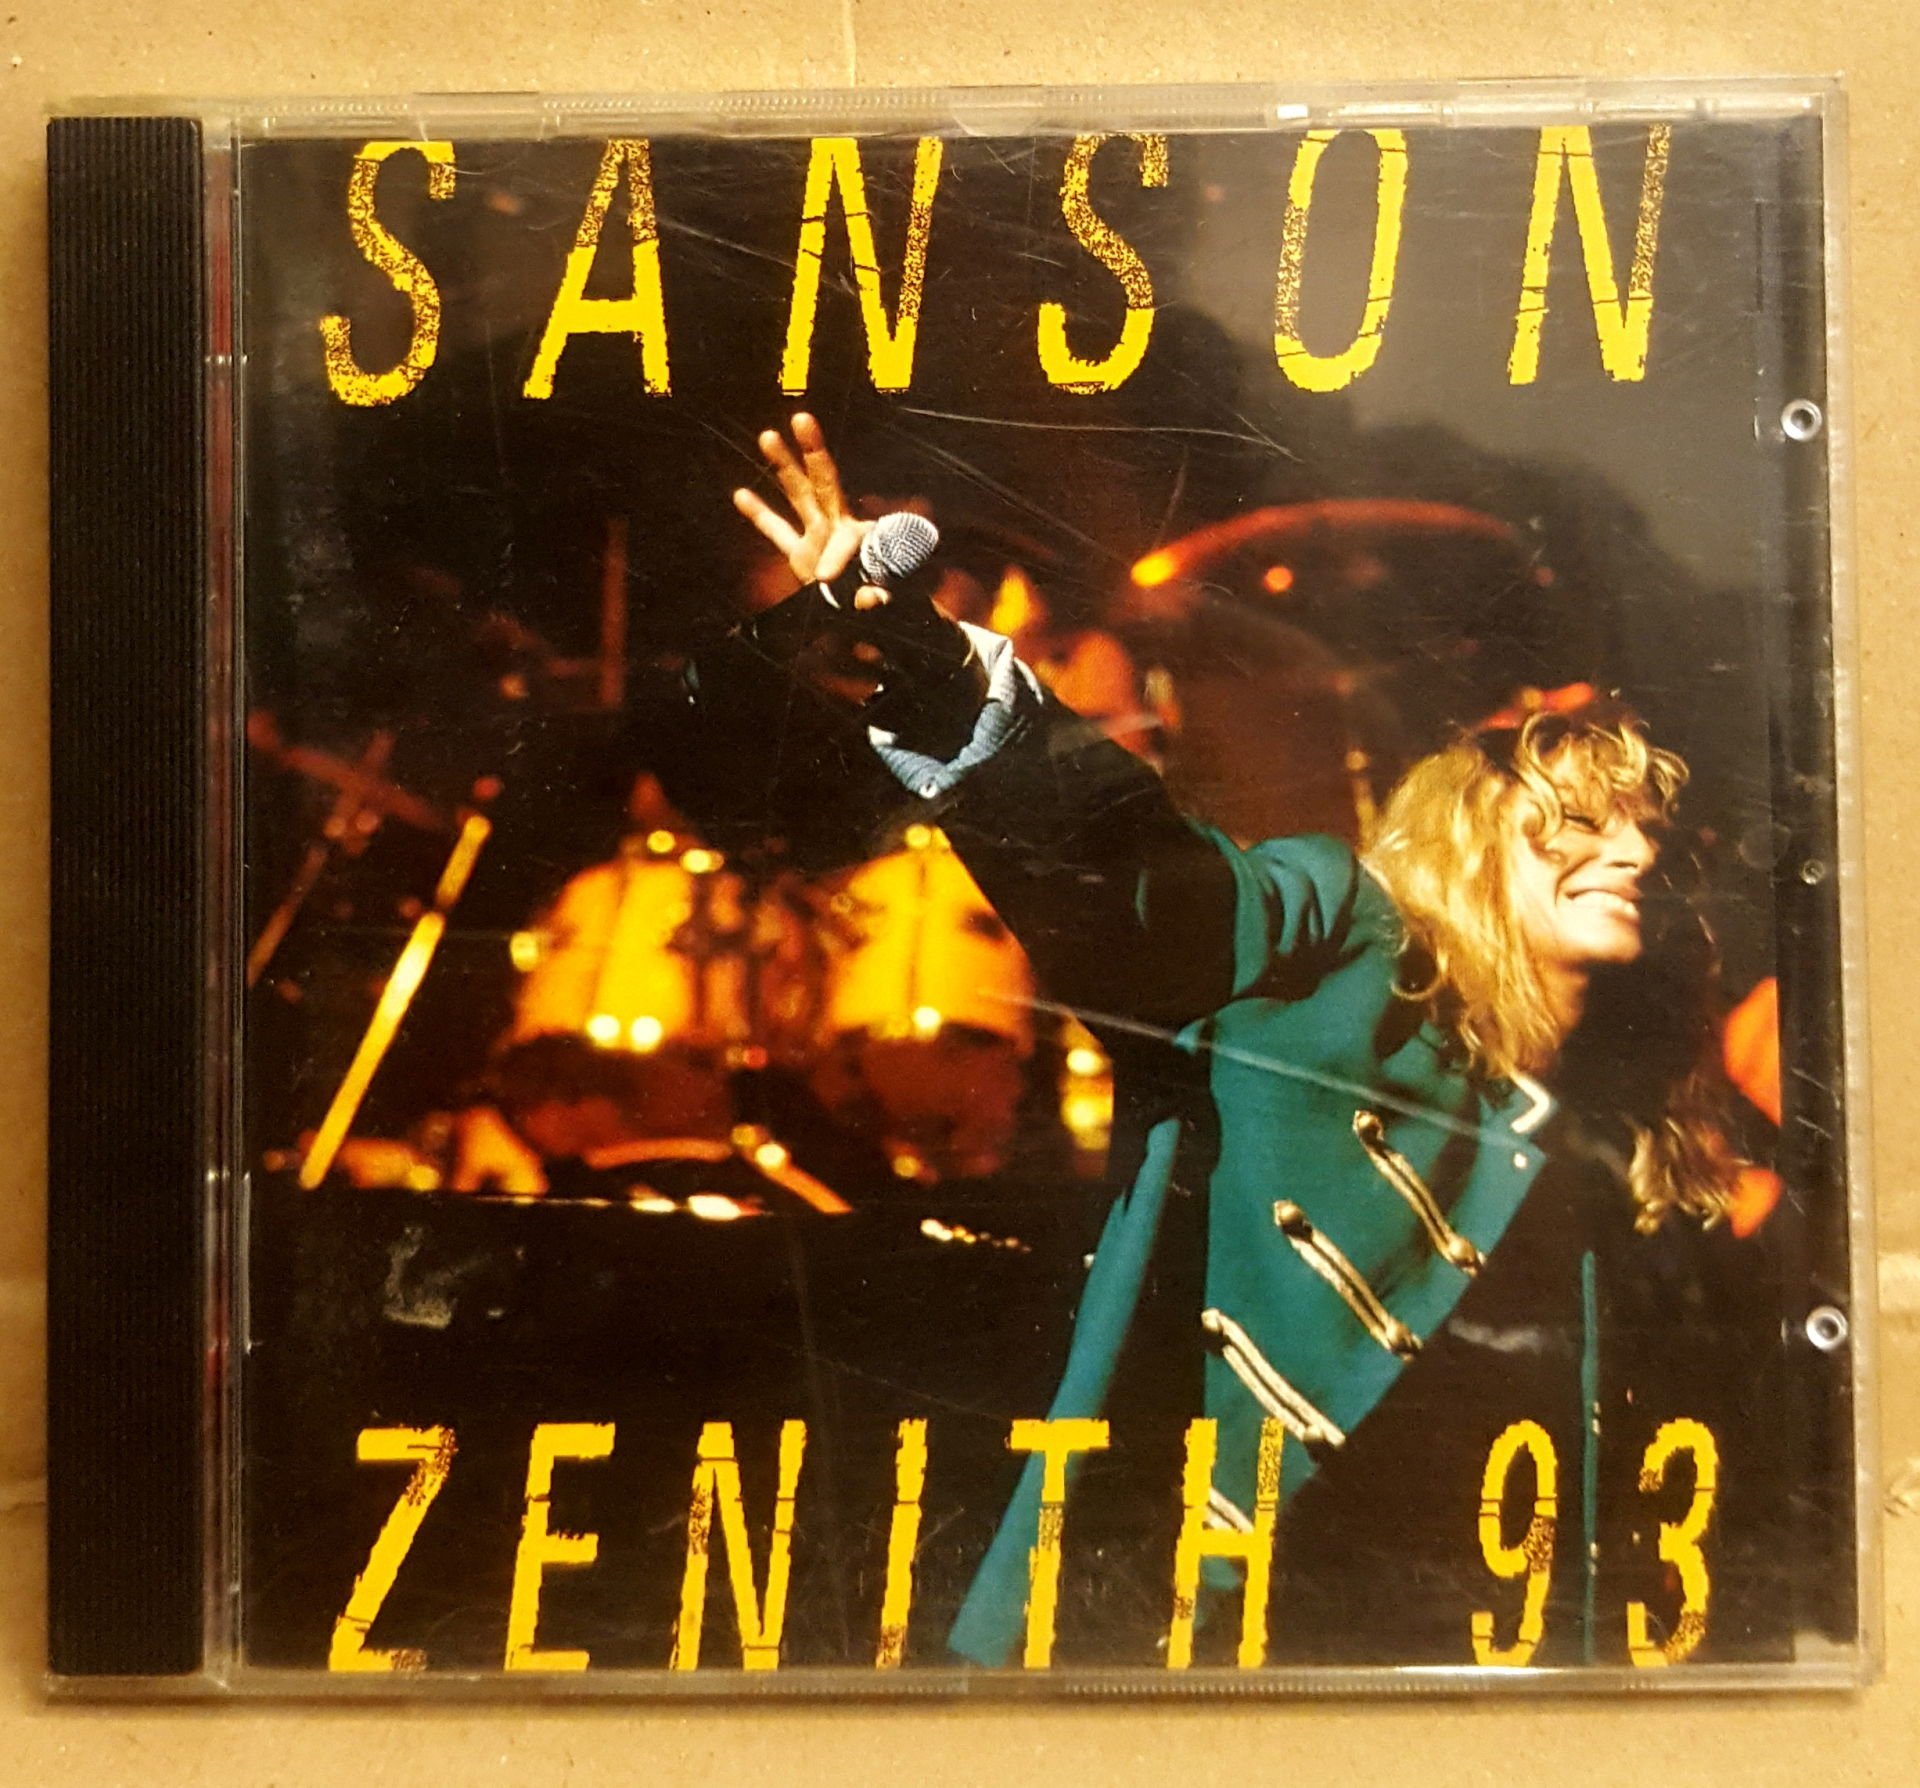 VERONIQUE SANSON - ZENITH '93 / LIVE (1993) - CD FRENCH POP CHANSON 2.EL